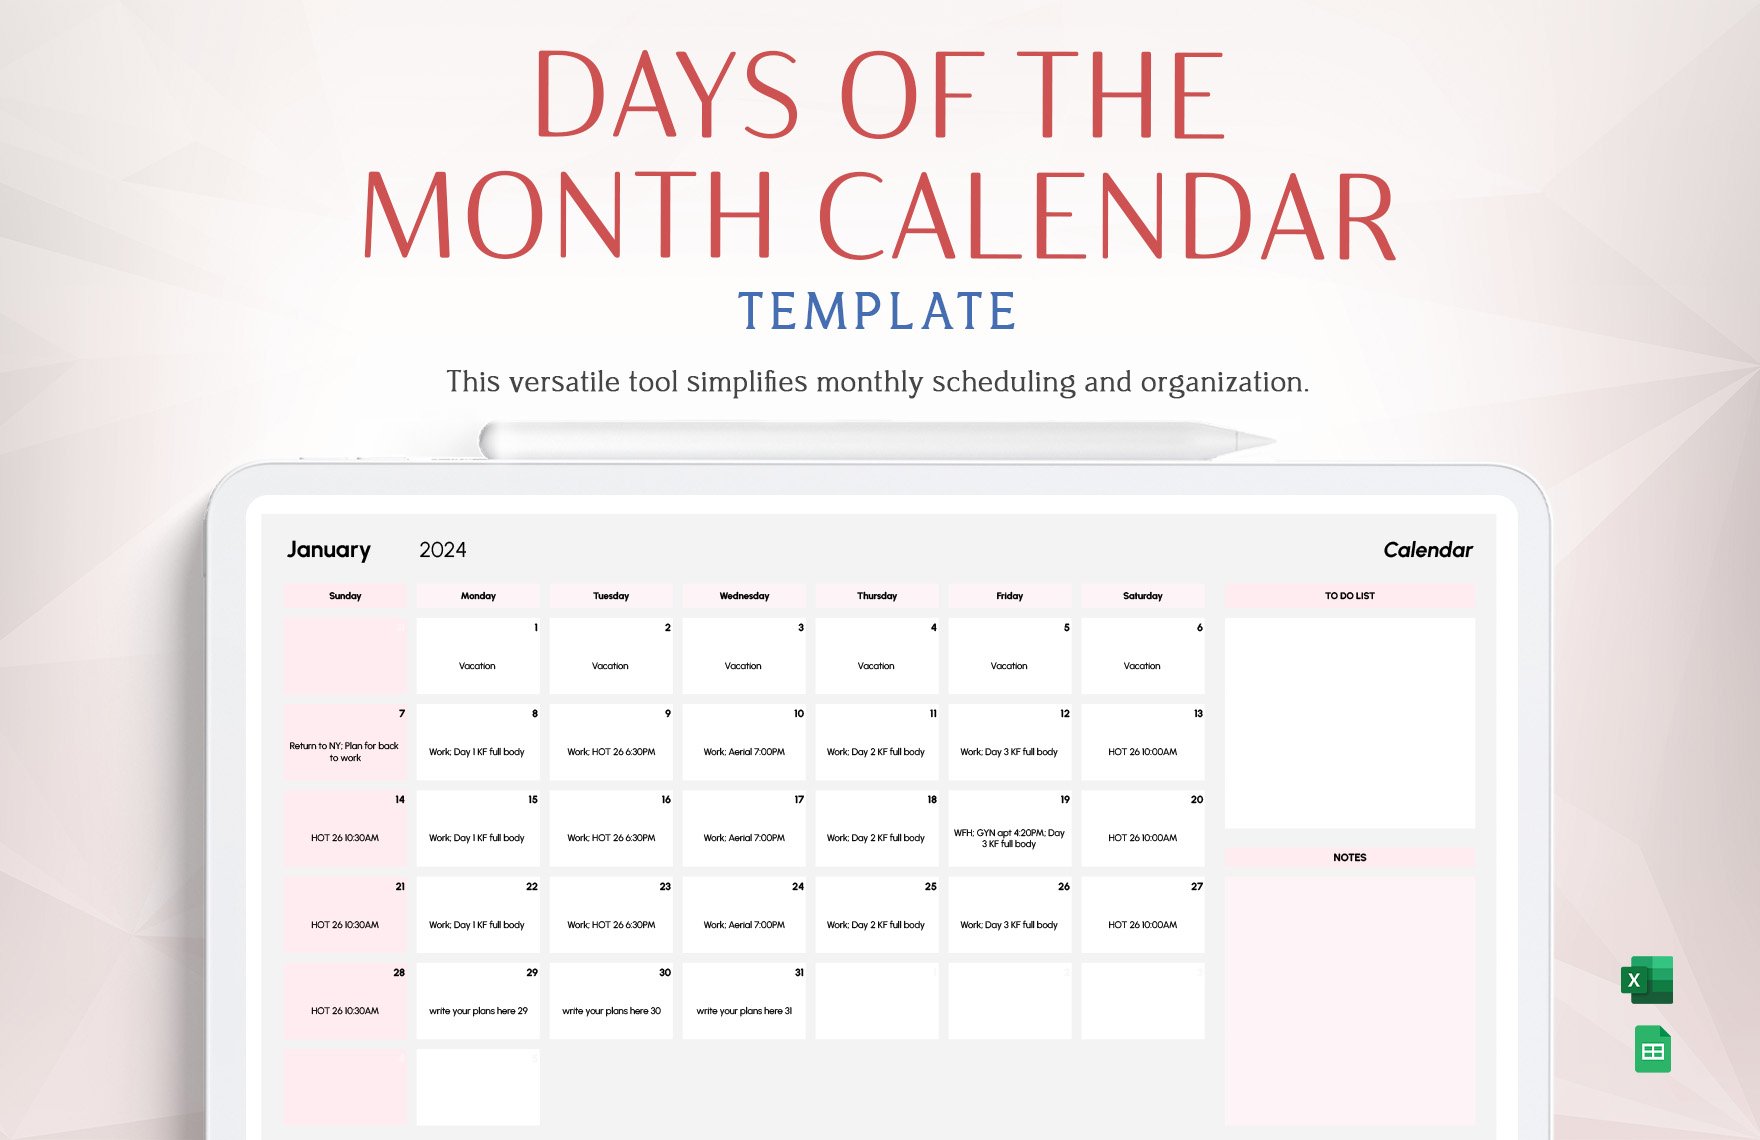 Days of a Month Calendar Template